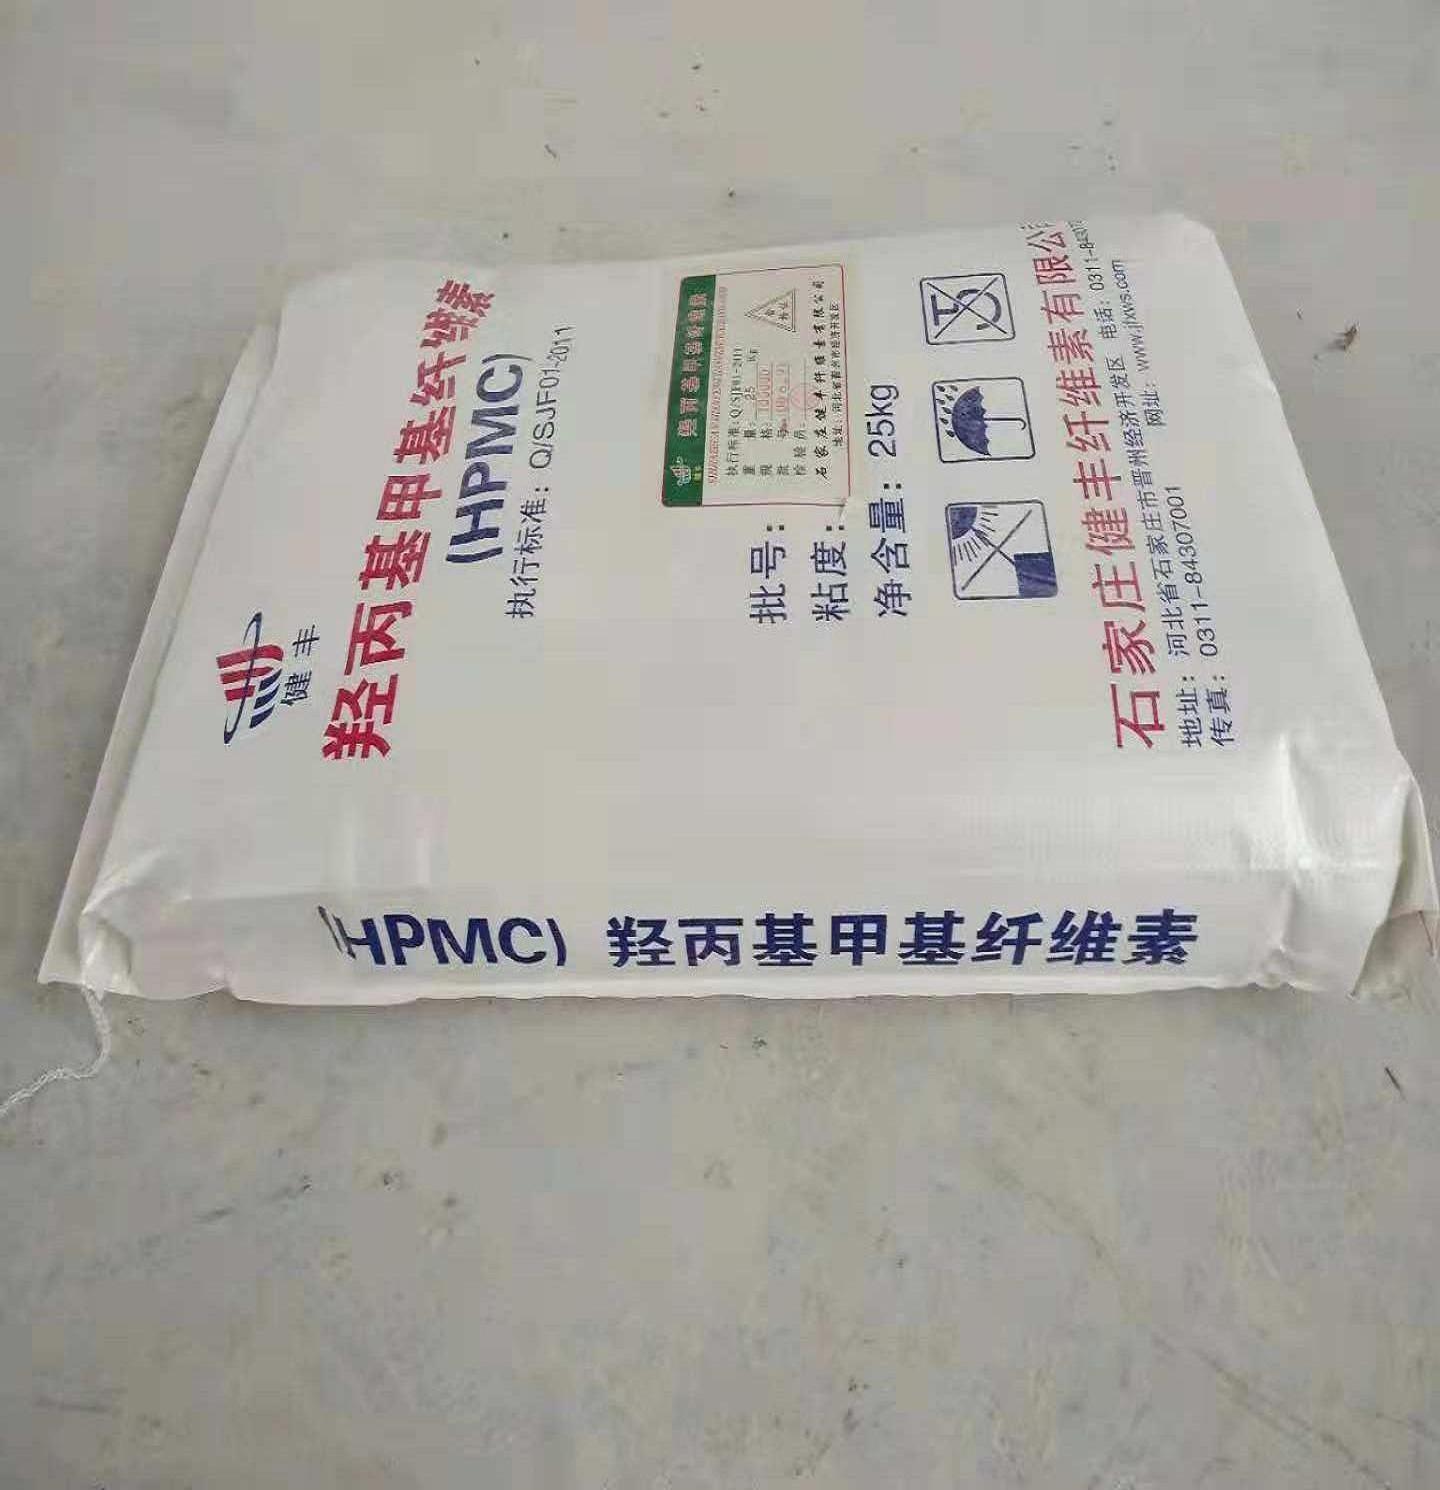 抹面砂浆HPMC纤维素生产厂家 保温砂浆纤维素生产厂家 高粘羟丙基甲基纤维素 高低粘羟丙基甲基纤维素